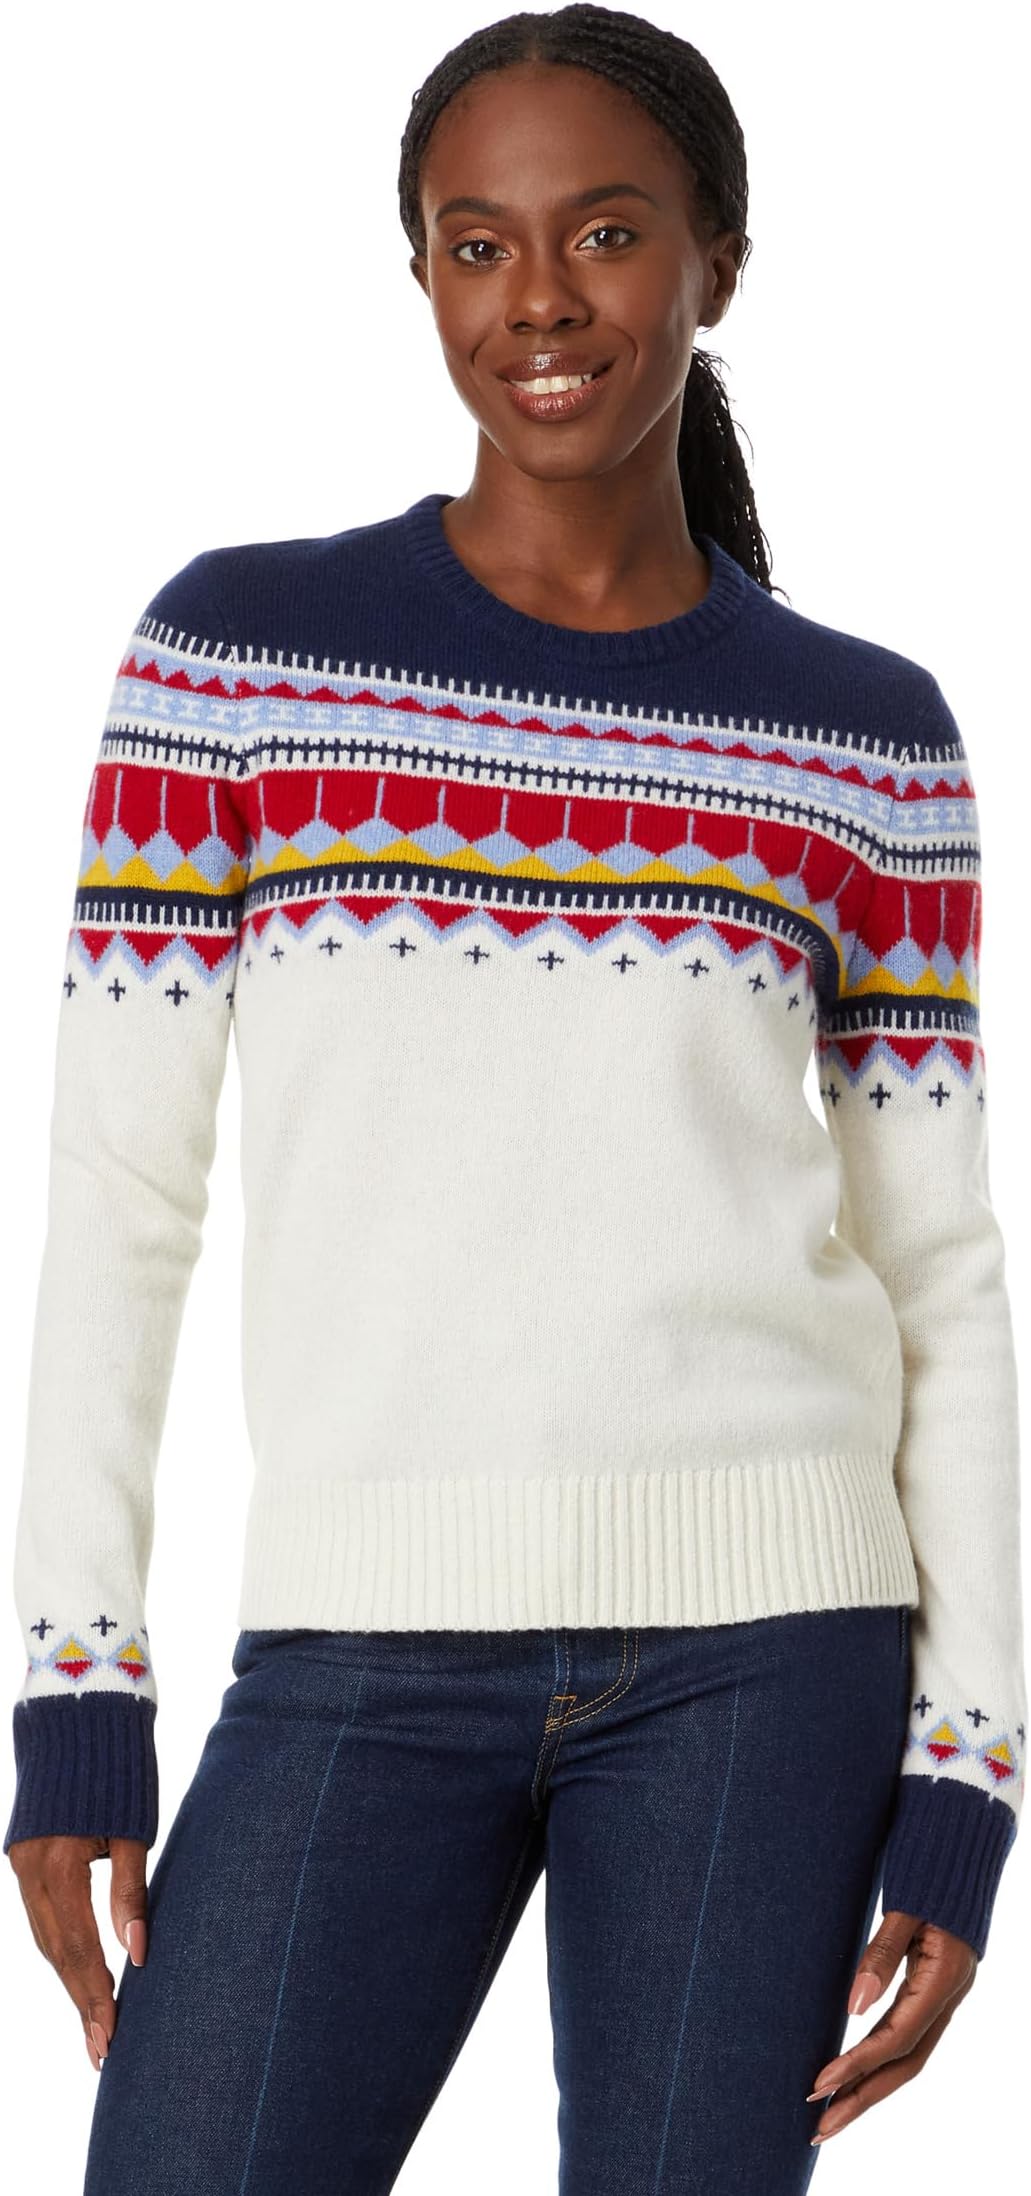 Пуловер из мериносовой шерсти Signature Camp, новинка, свитер L.L.Bean, цвет Sailcloth Fair Isle